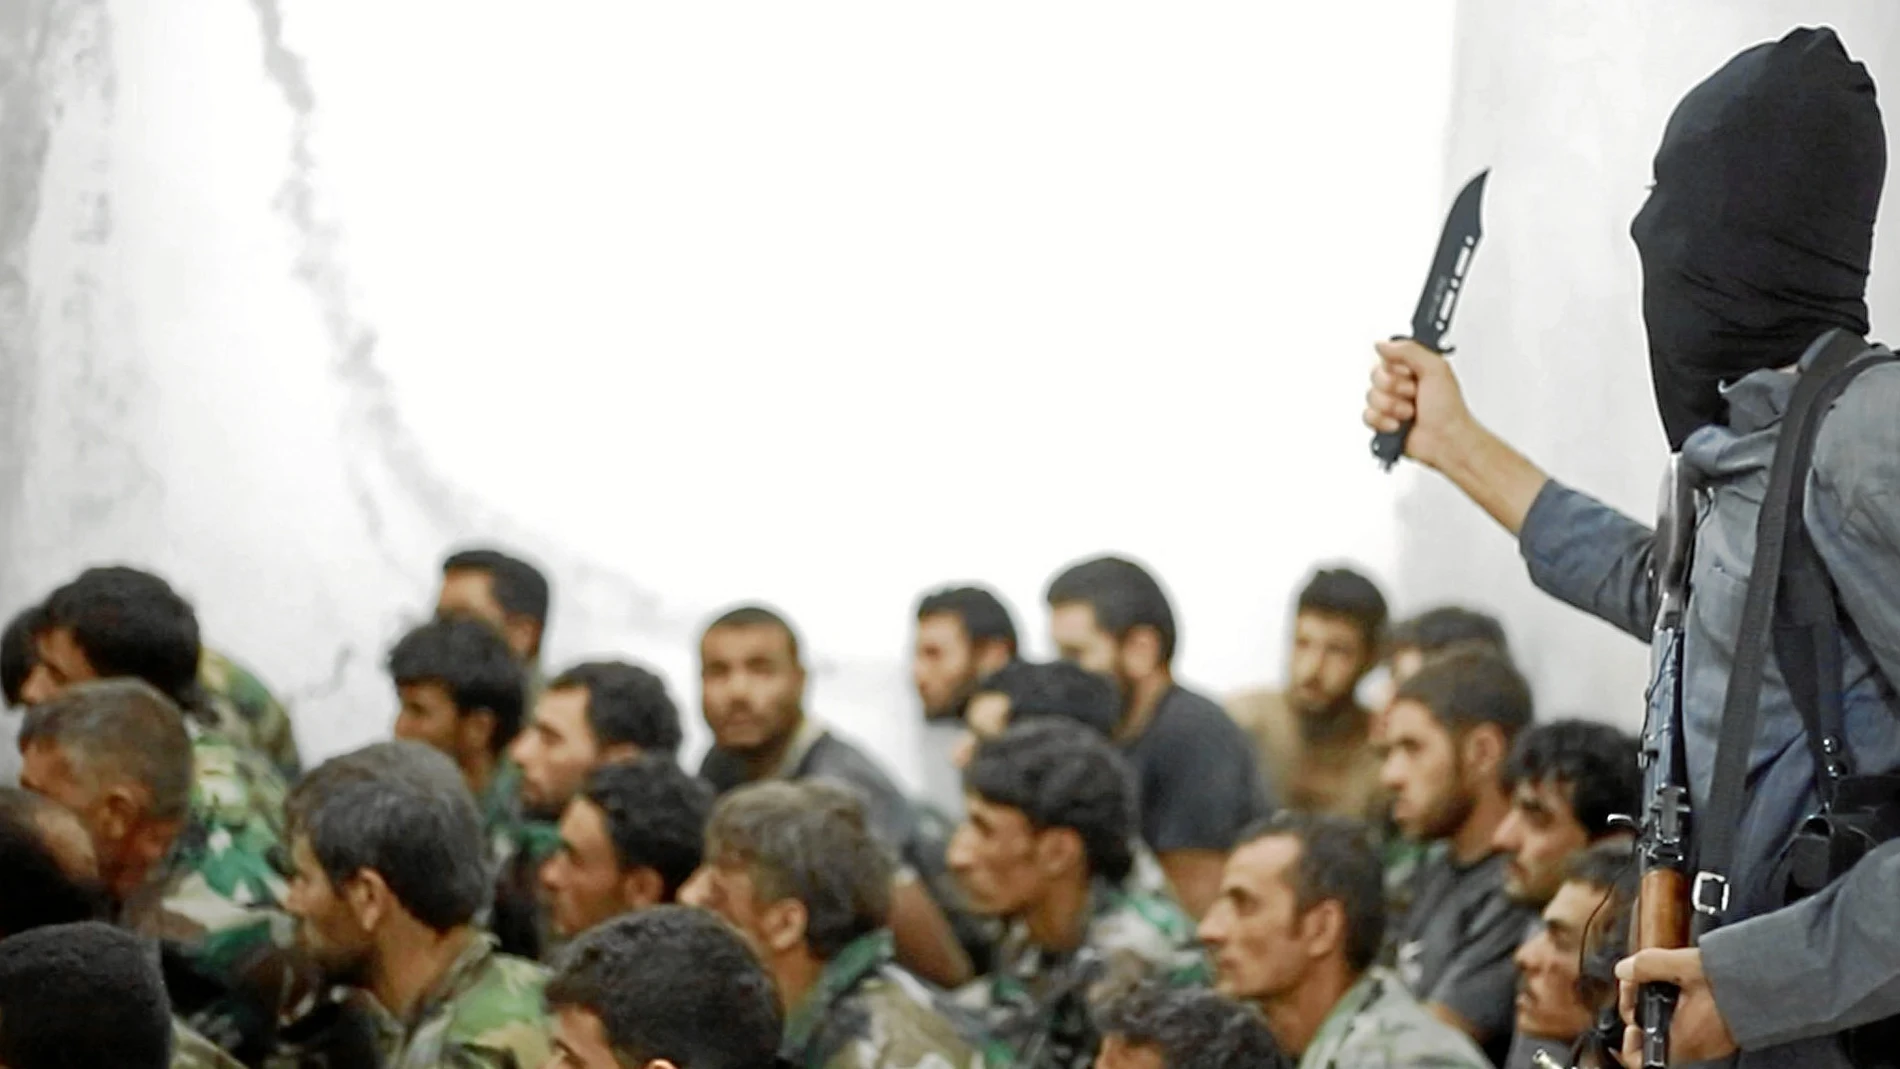 Un miembro del Estado Islámico, en una foto de 2014, amenaza a un grupo de soldados sirios hechos prisioneros tras la batalla de Raqqa / Ap